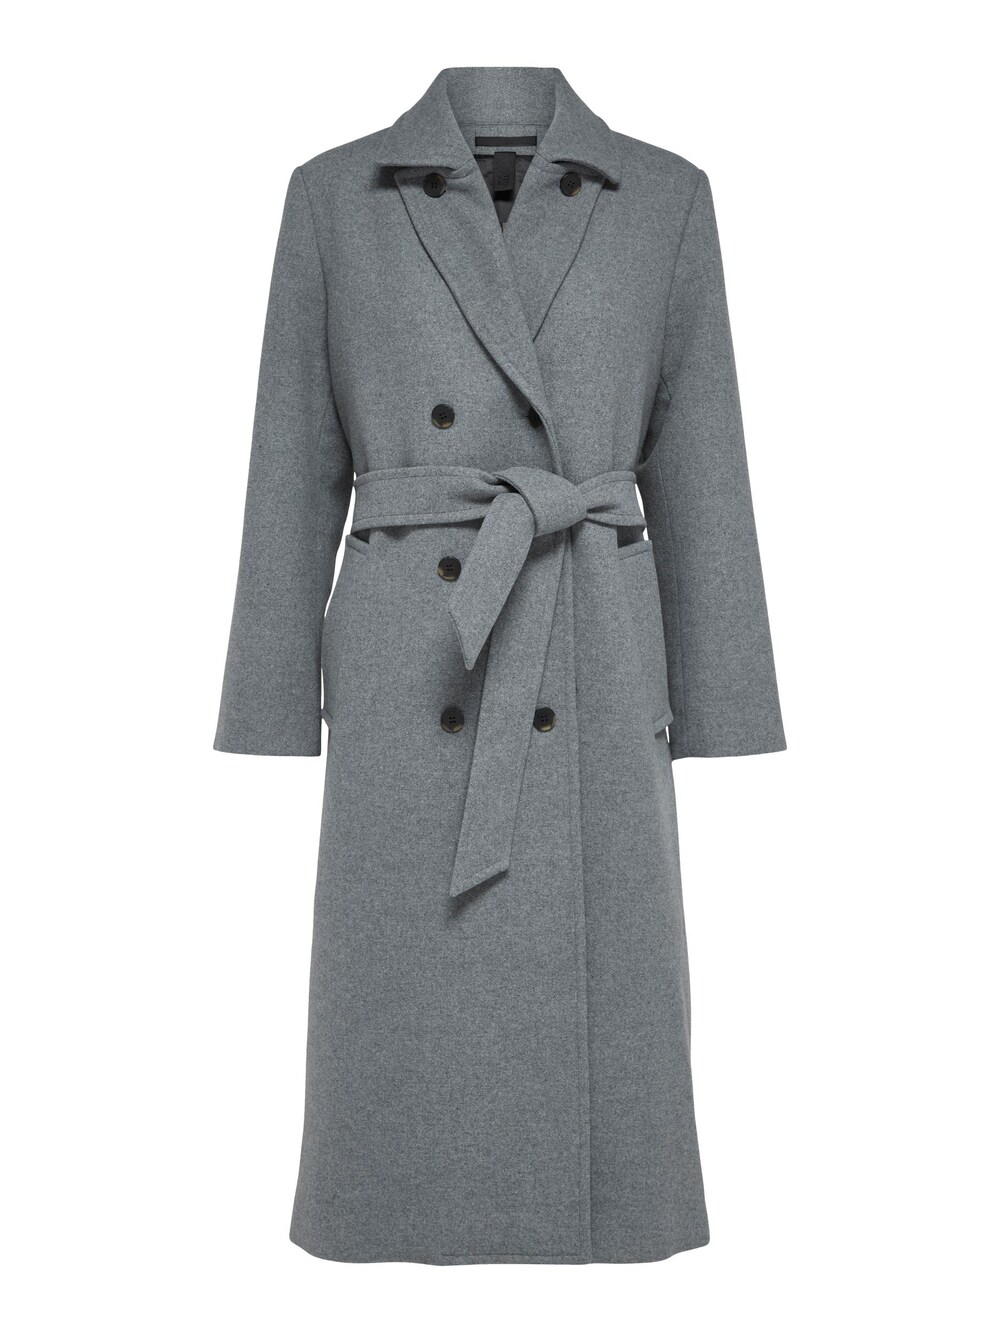 Межсезонное пальто Selected Milo, пестрый серый межсезонное пальто s oliver пестрый бежевый